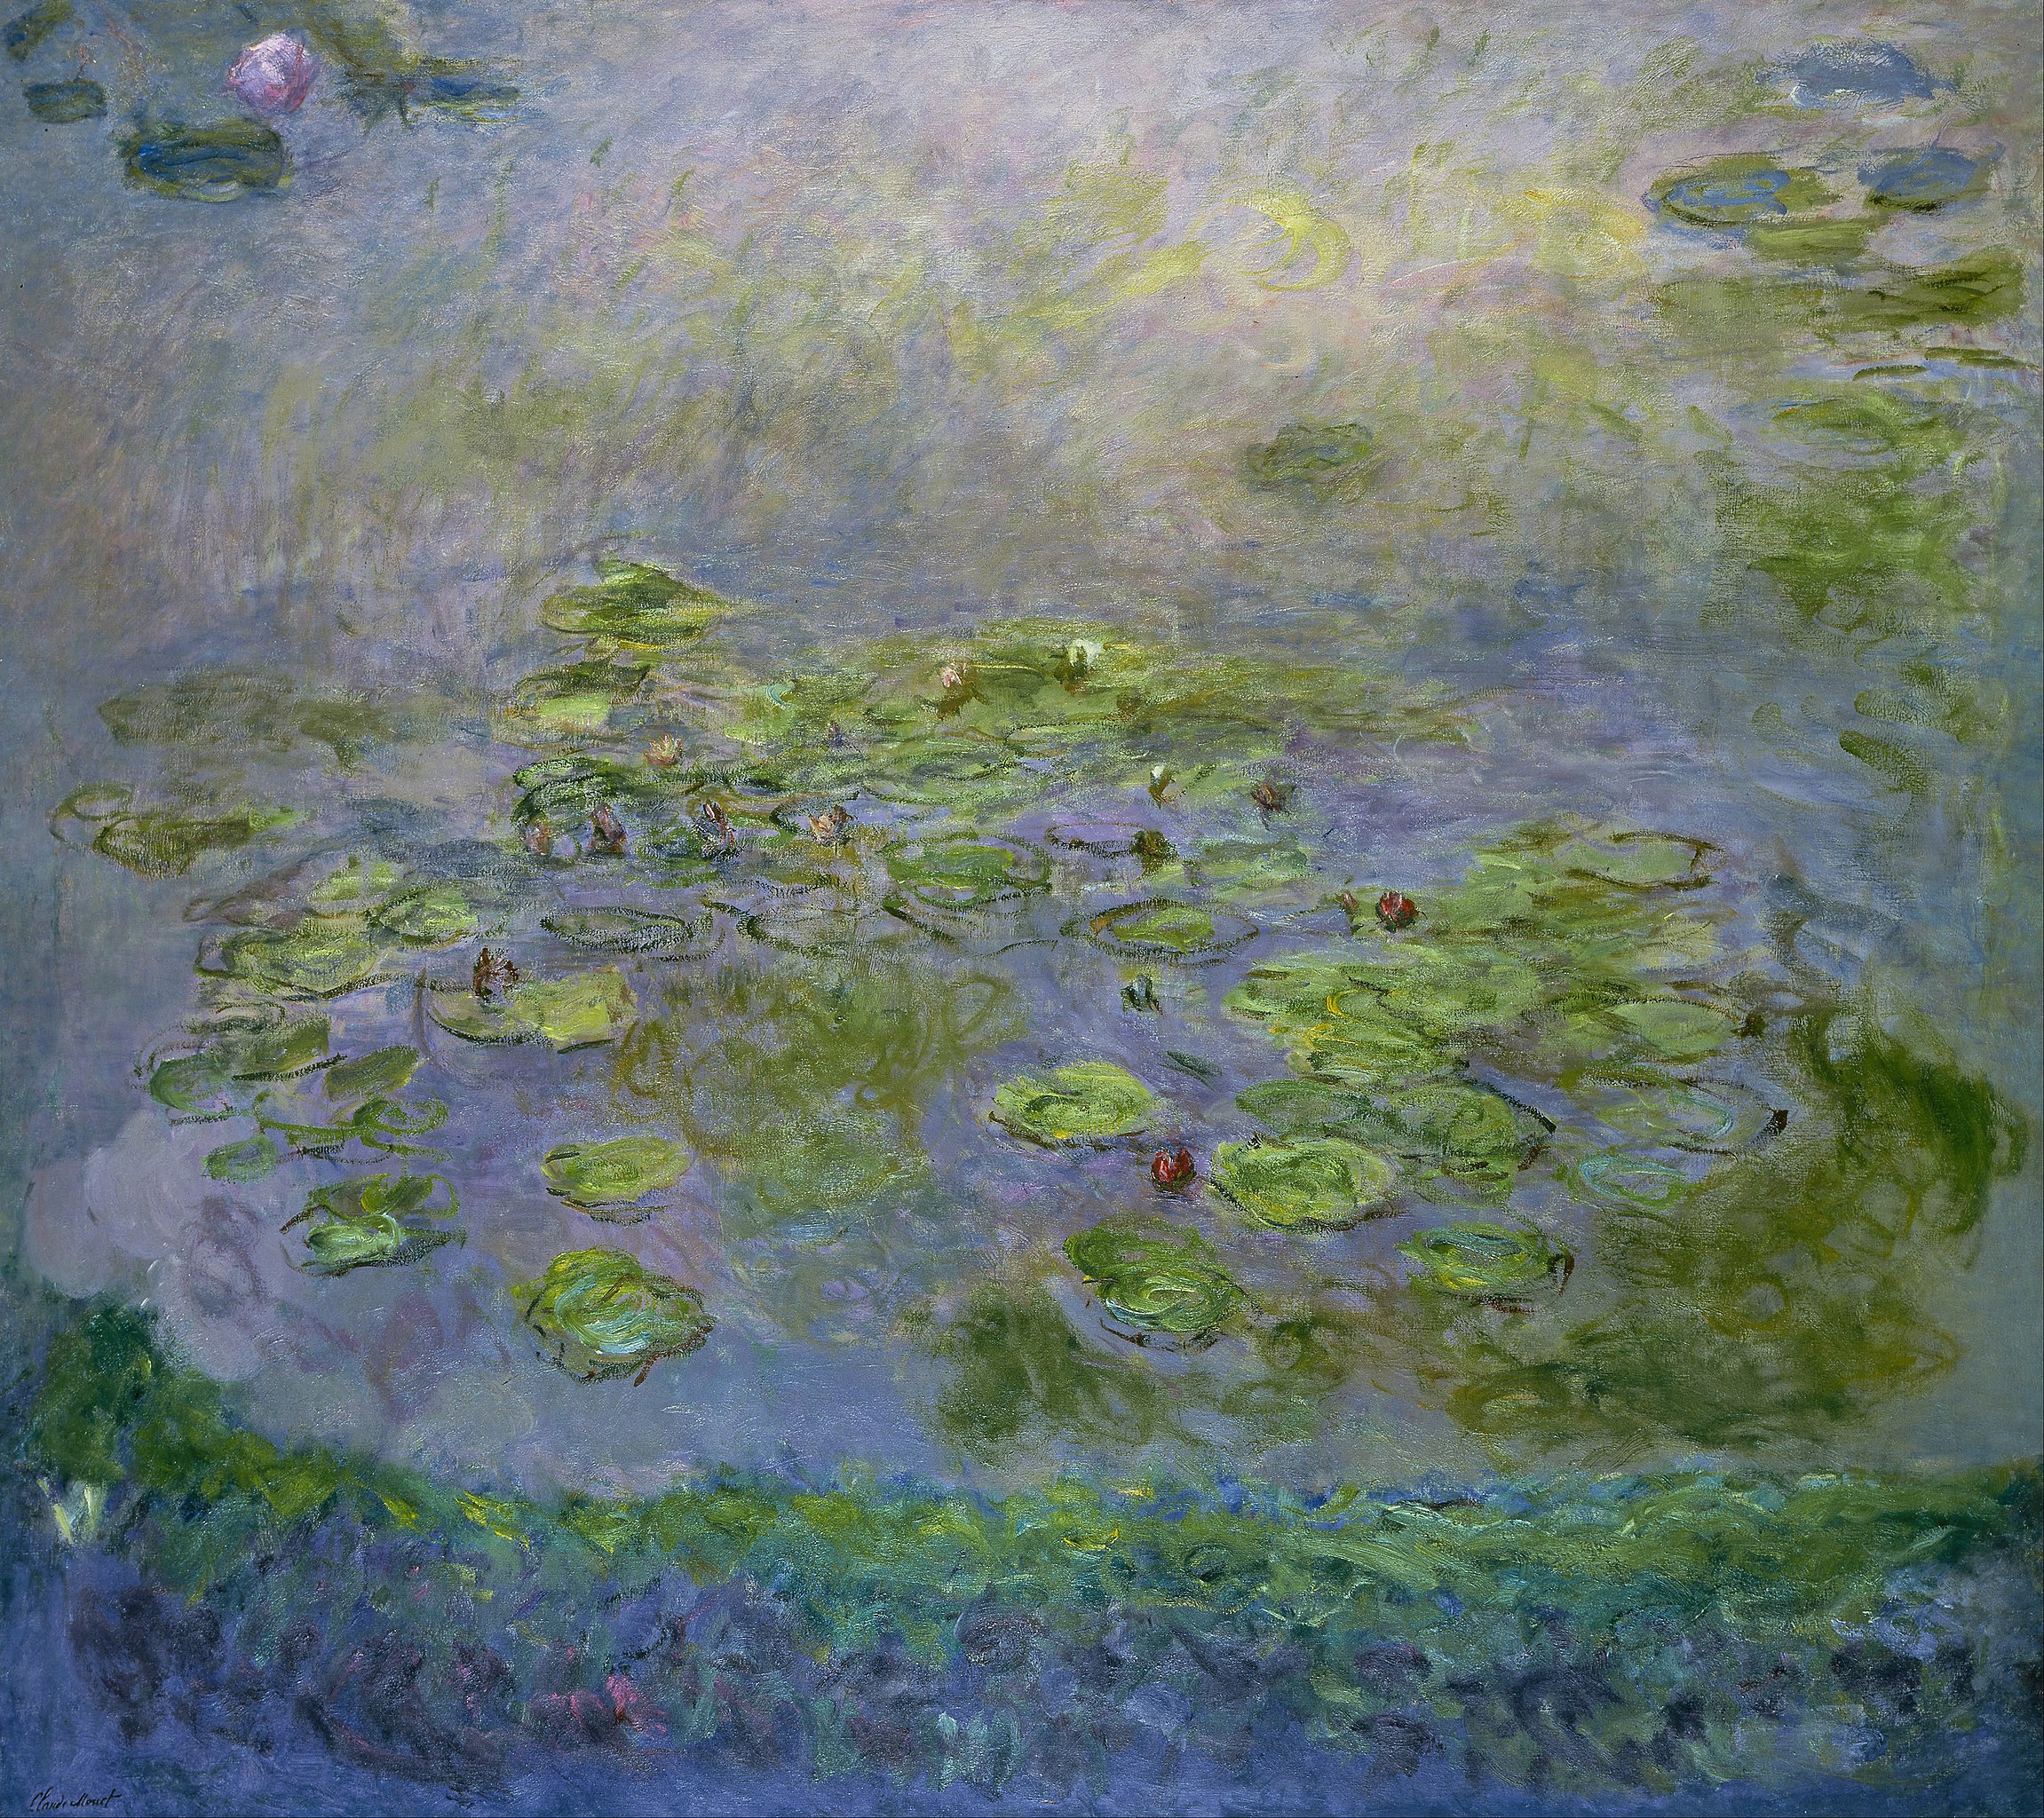 Lilie wodne (Nenufary) by Claude Monet - ok. 1914-17 - 201,6 x 181 cm 